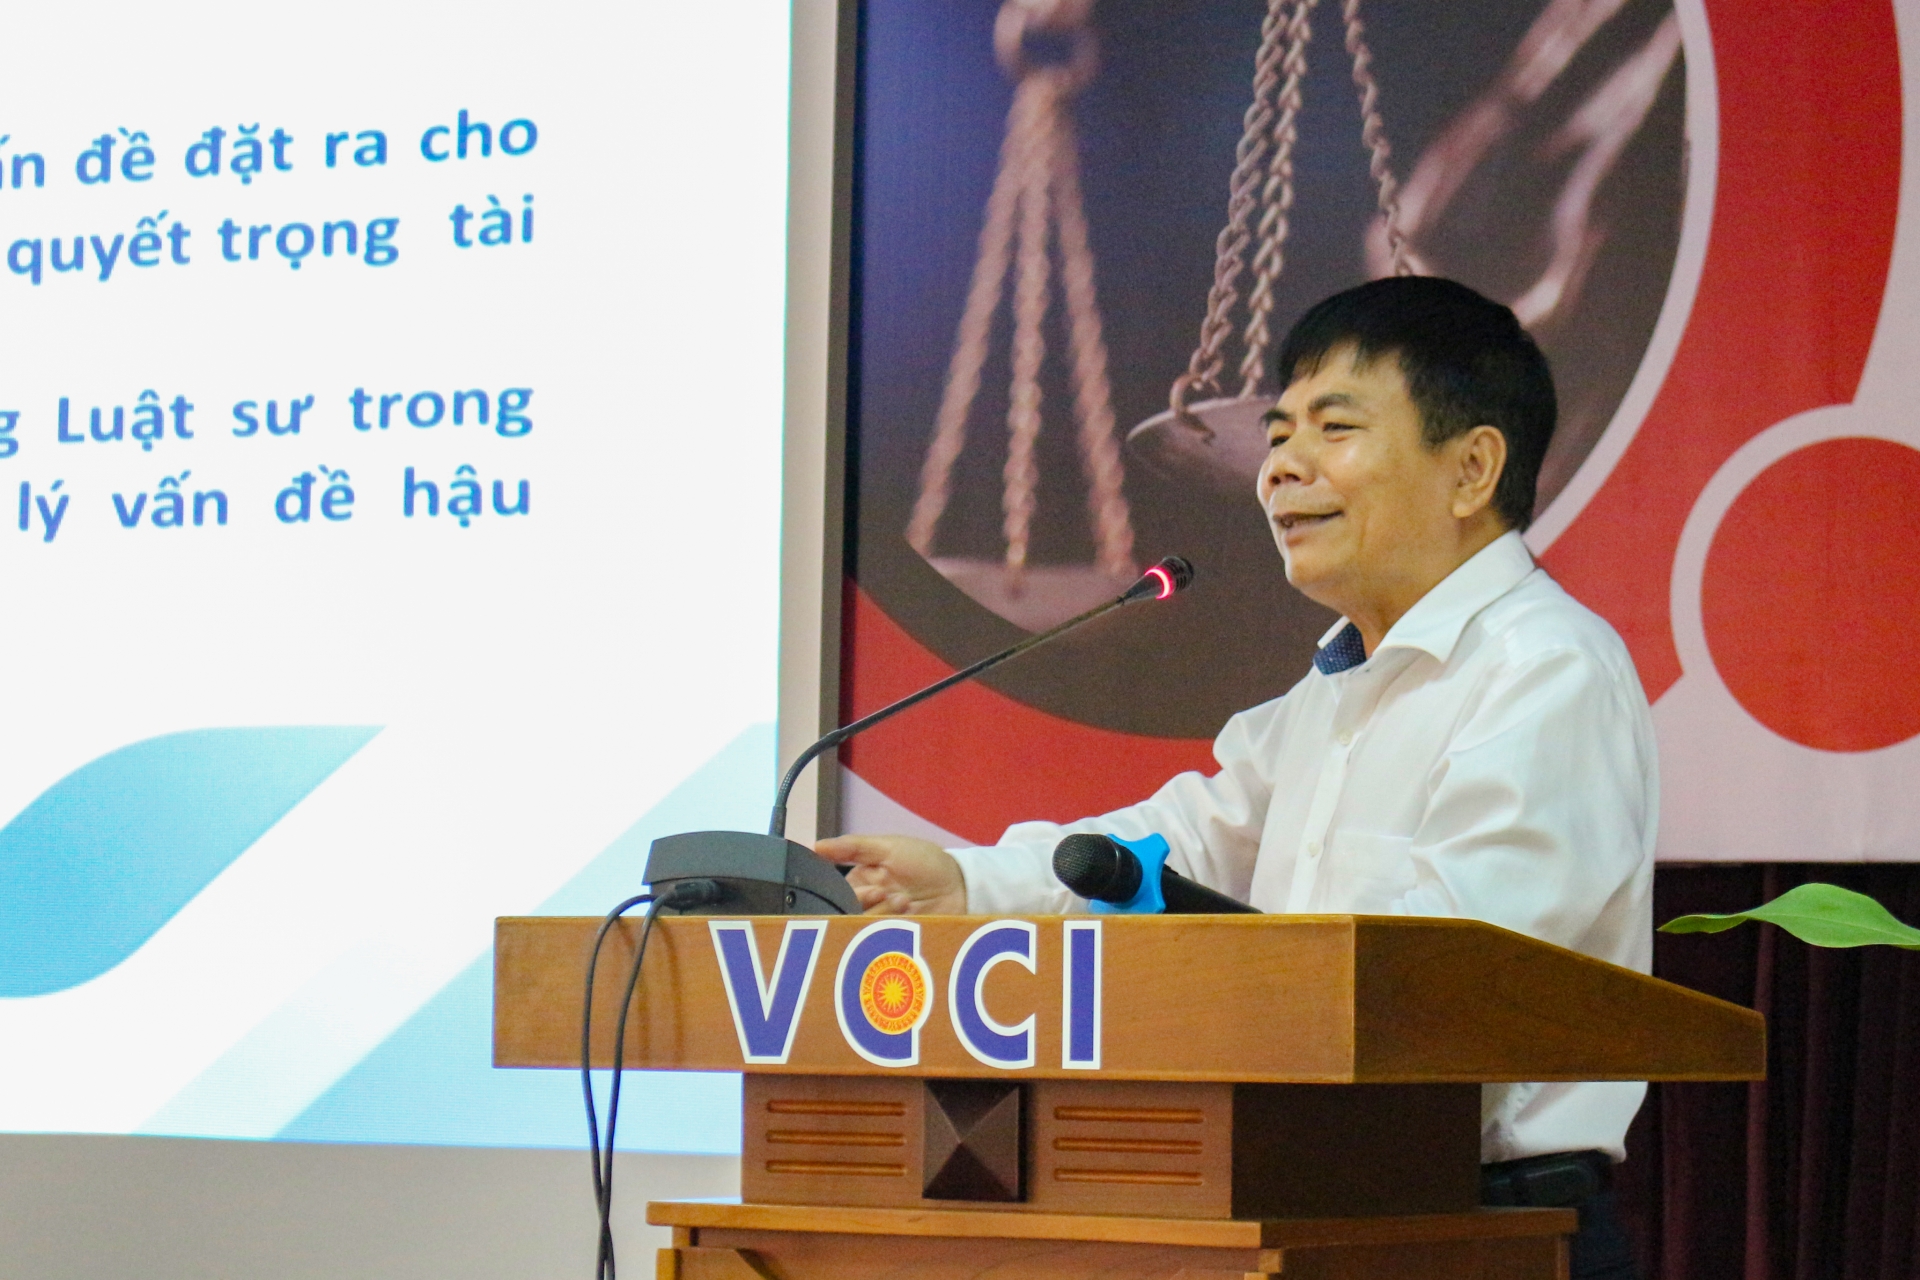 Luật sư Lê Thành Kính tham gia chương trình giảng dạy bên cạnh vai trò là luật sư